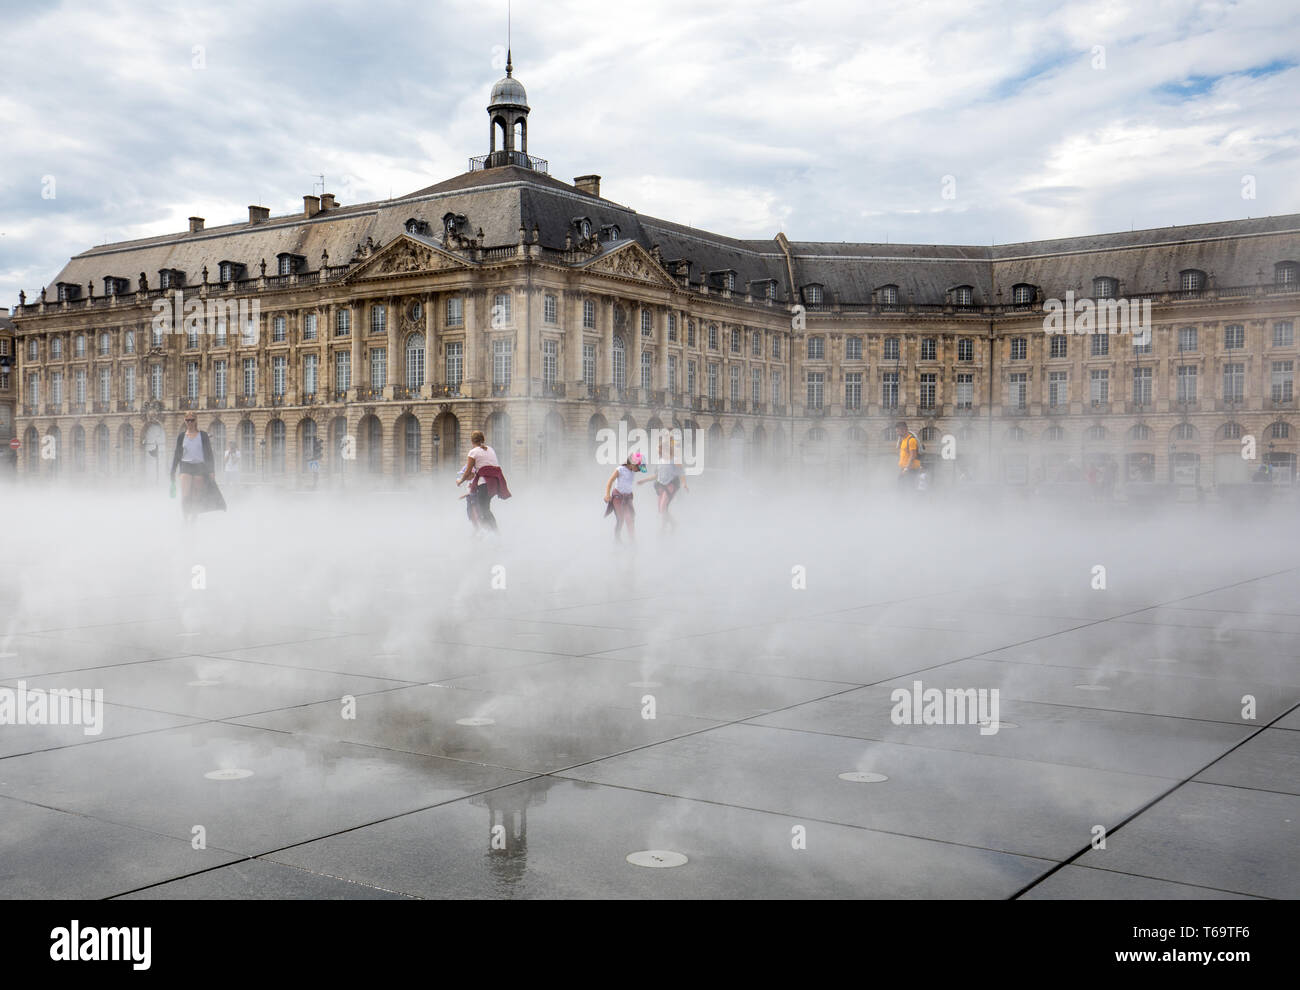 Burdeos, Francia - 9 de septiembre de 2018: efecto de niebla en el espejo  de agua en la parte delantera de la Bolsa (Plaza de la Bourse), Burdeos  (Francia Fotografía de stock - Alamy